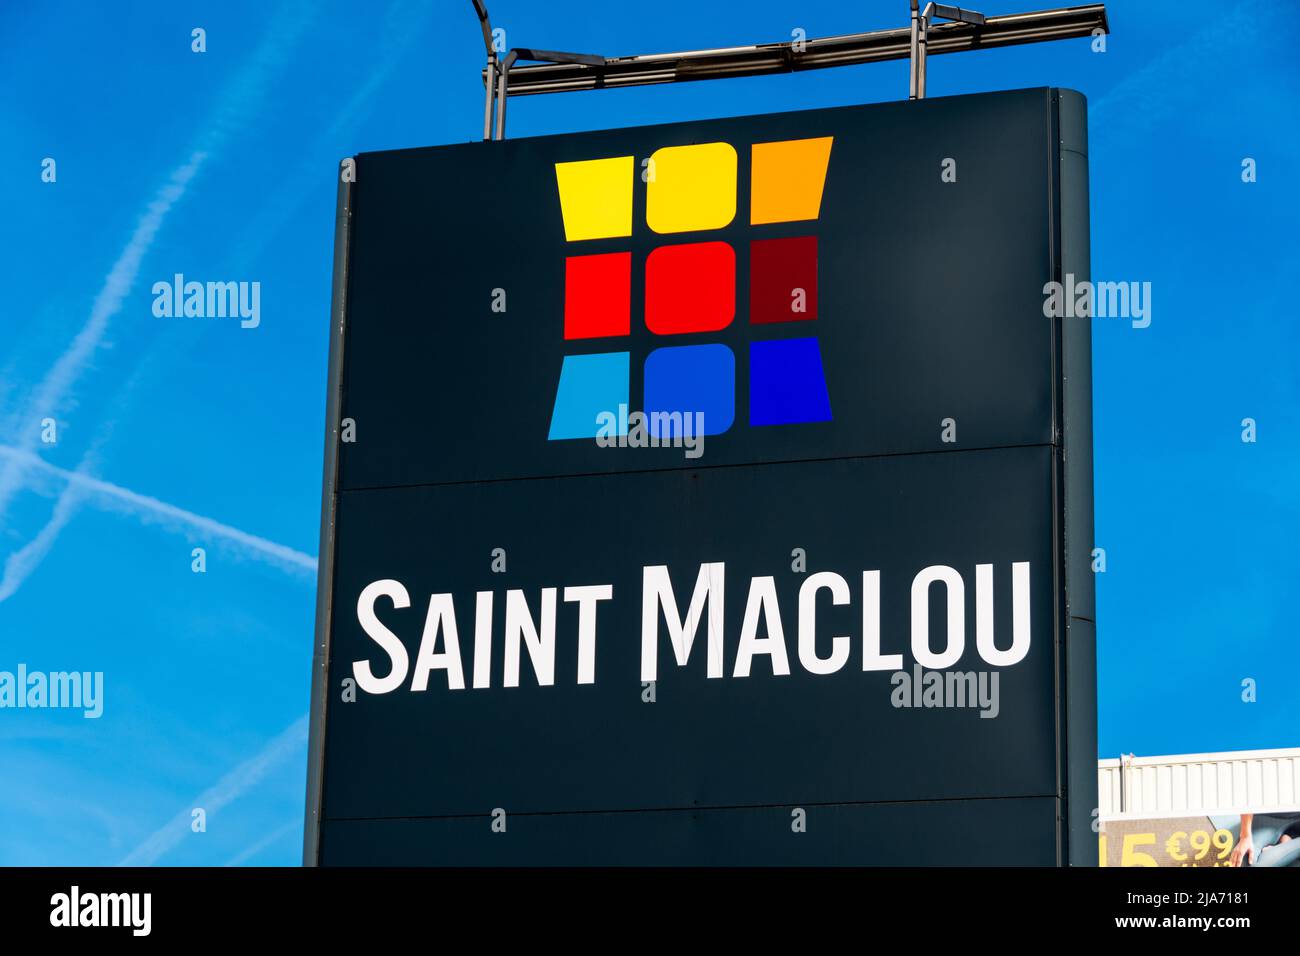 Schild eines Ladens in Saint-Maclou. Saint-Maclou ist ein französisches Unternehmen, das sich auf die Dekoration von Wänden, Böden und Fenstern spezialisiert hat Stockfoto